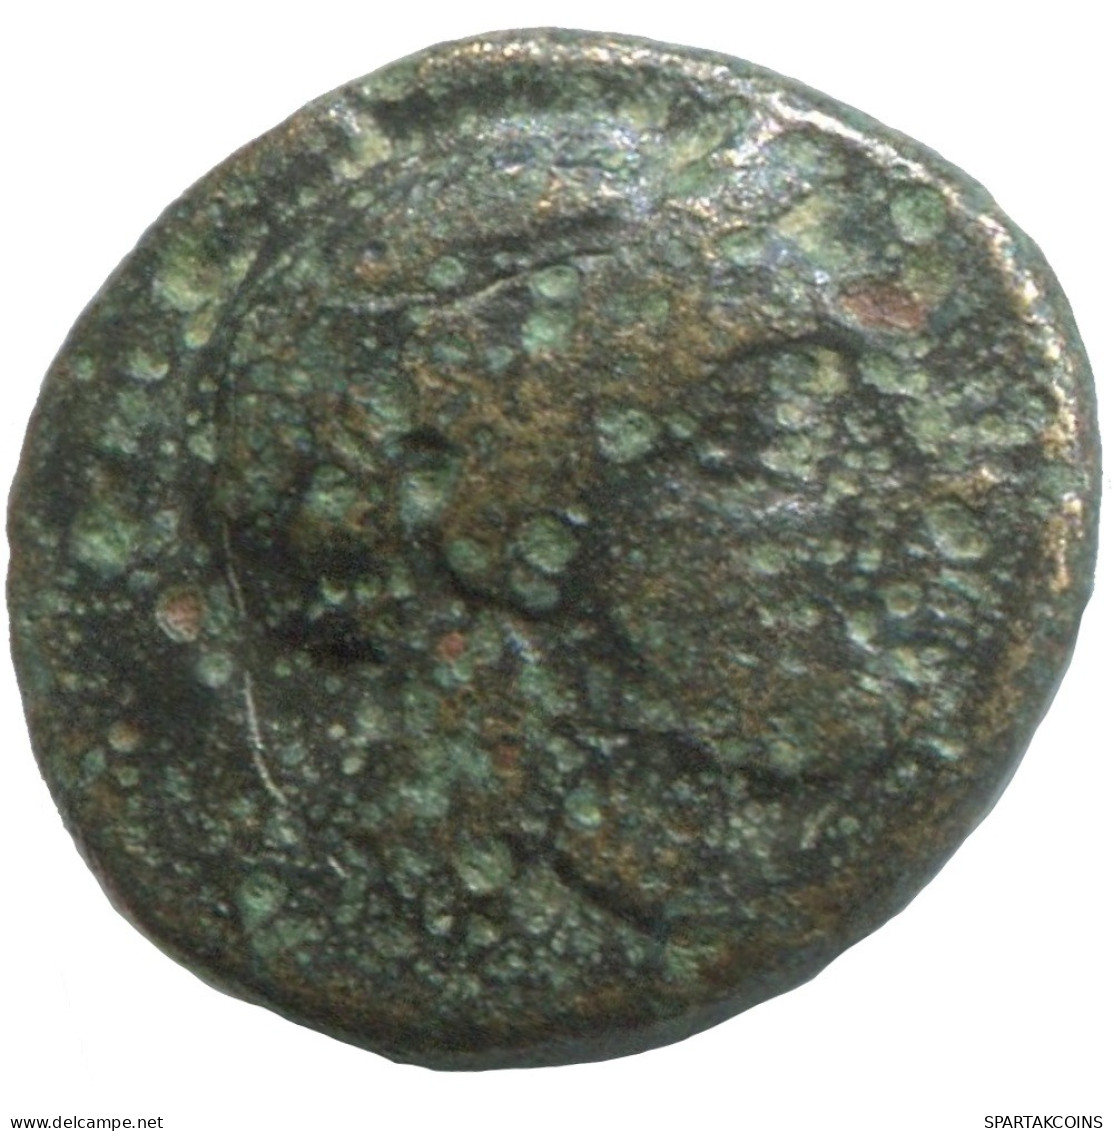 Ancient Antike Authentische Original GRIECHISCHE Münze 1.4g/11mm #SAV1394.11.D.A - Greche